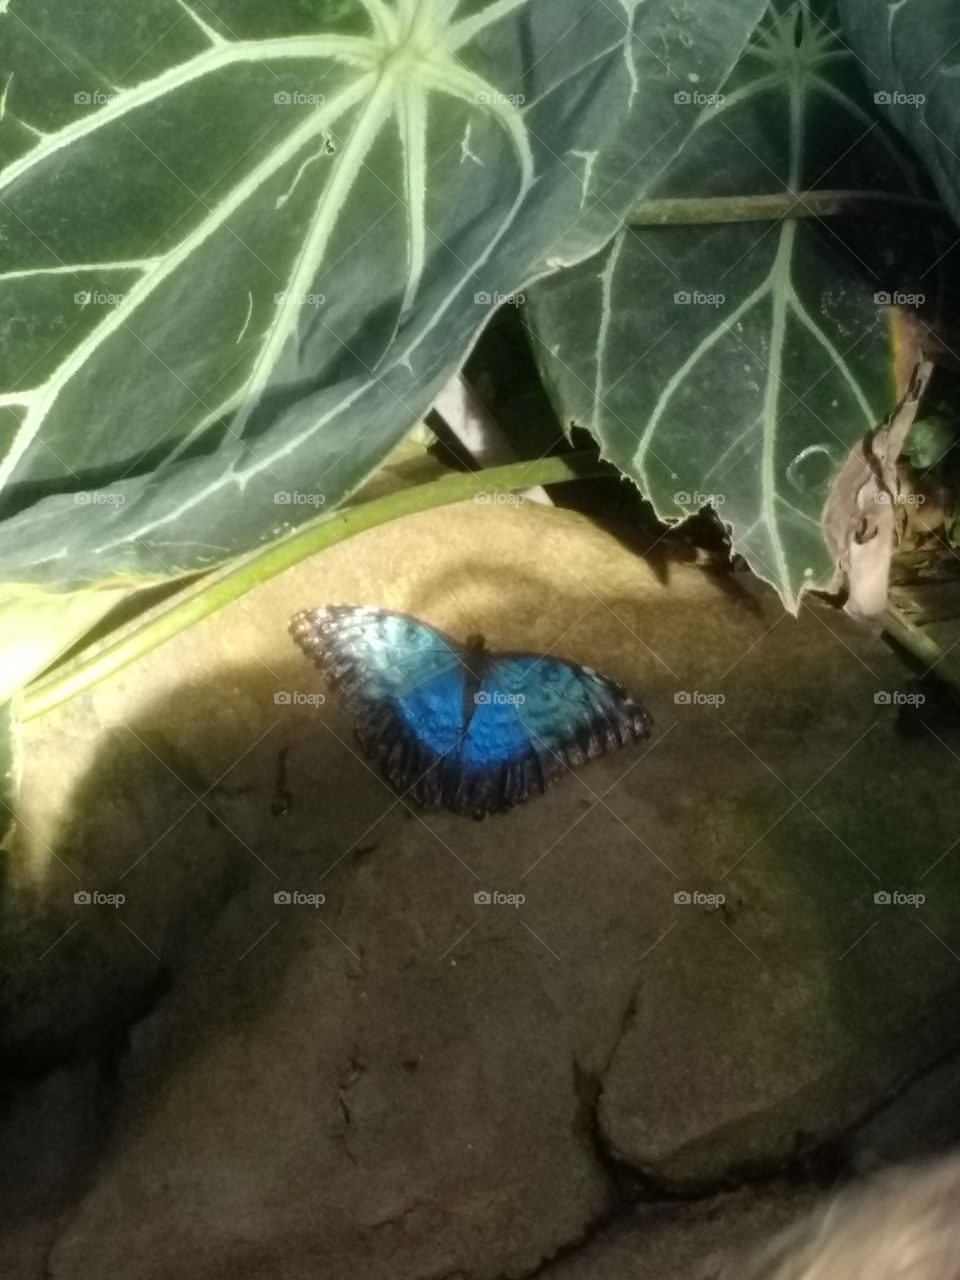 butterflies, butterfly, blue, blues, greenery, rock, one, beautiful